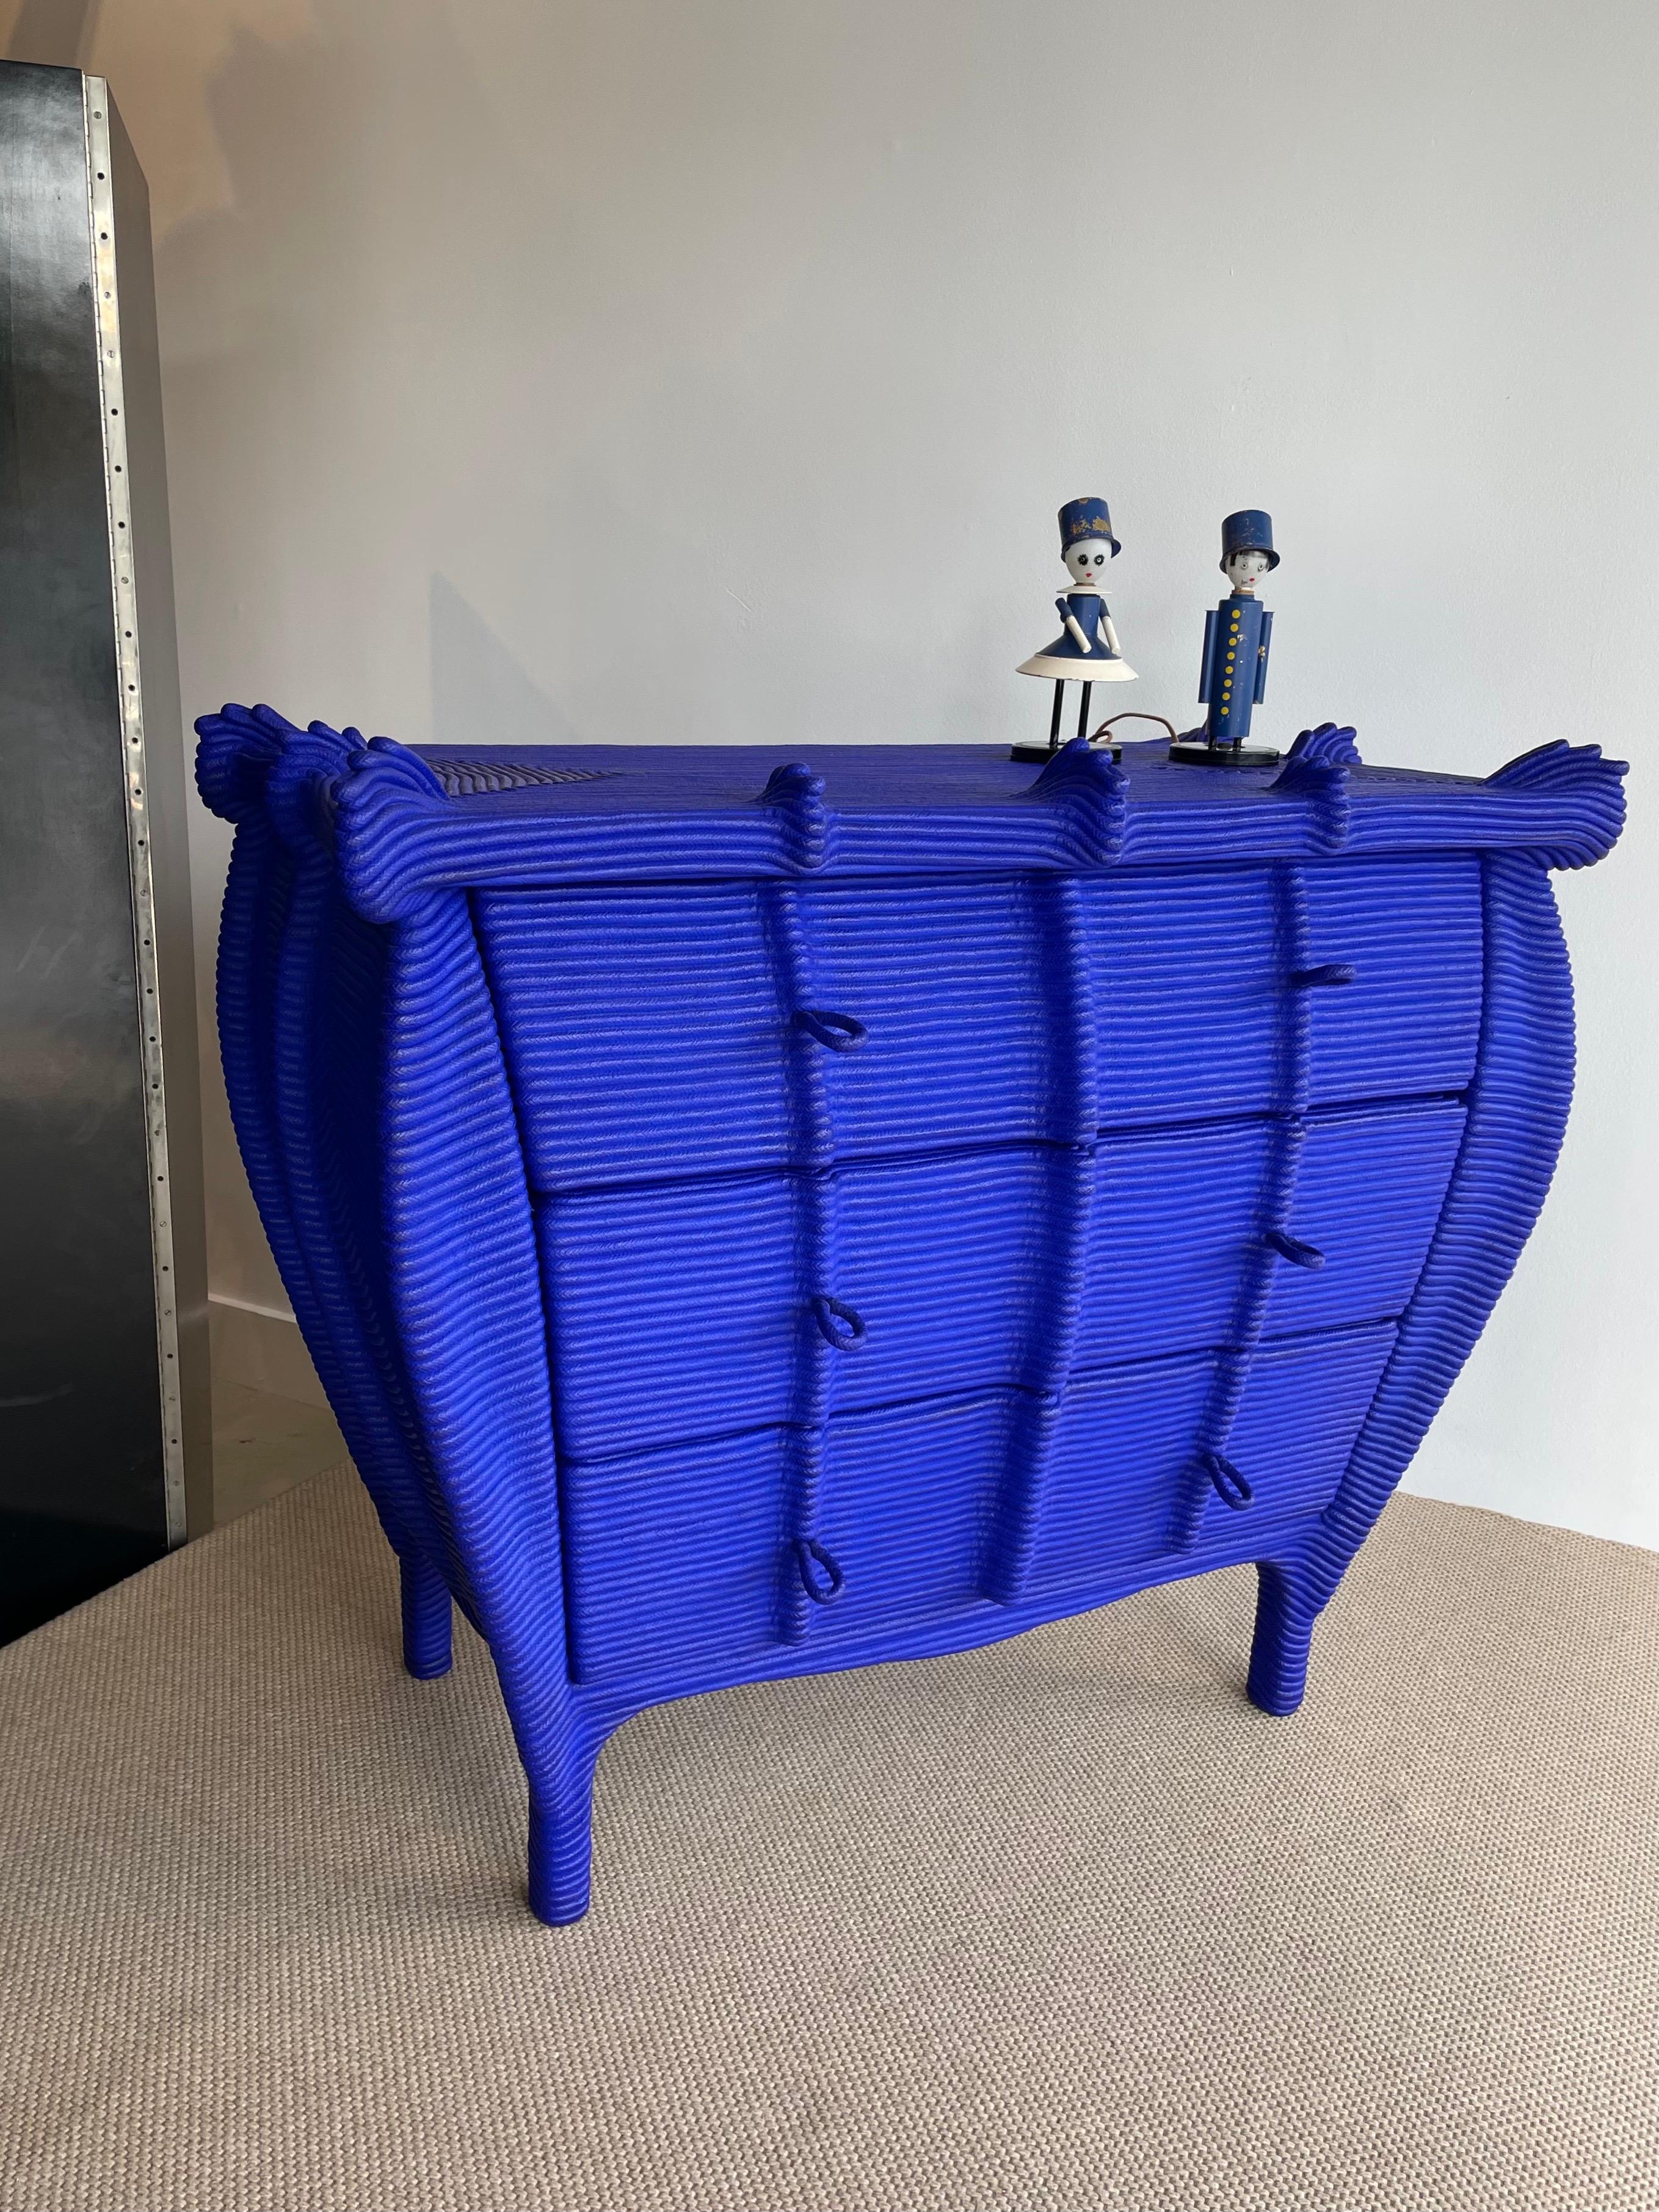 Armoire Yves Klein enrobée de corde bleu vif avec 3 tiroirs et des poignées en corde. Tout est d'origine et en excellent état. C'est une beauté !

Artiste visuel né (1946) et vivant à Paris, son travail se concentre sur une utilisation détournée